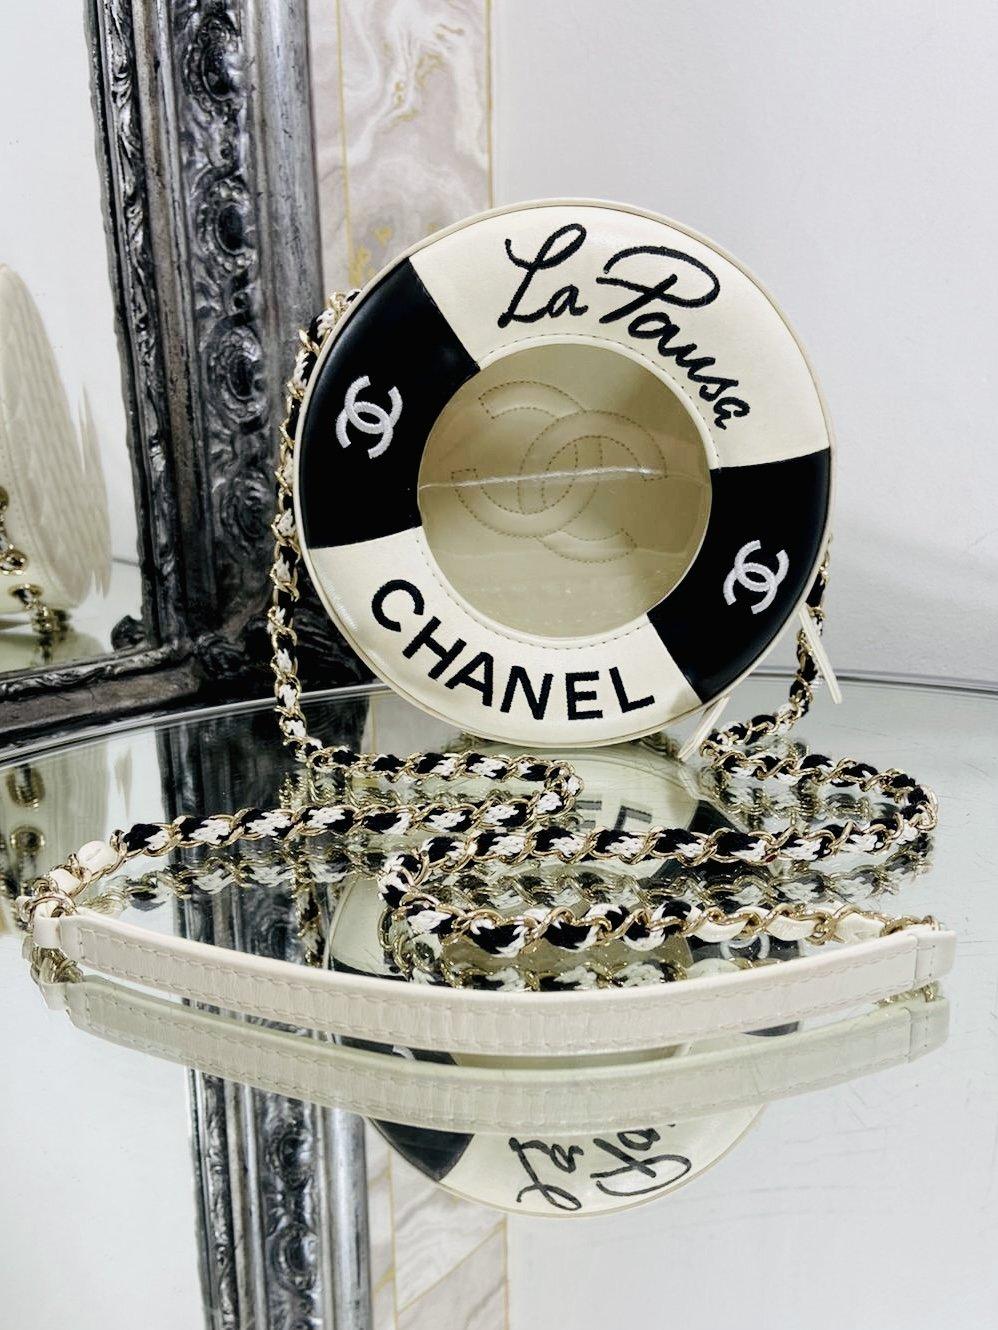 Chanel édition limitée La Pausa Rescue Buoy Bag 

Issu de la collection 2019 en cuir noir et blanc avec quincaillerie dorée. Logos 